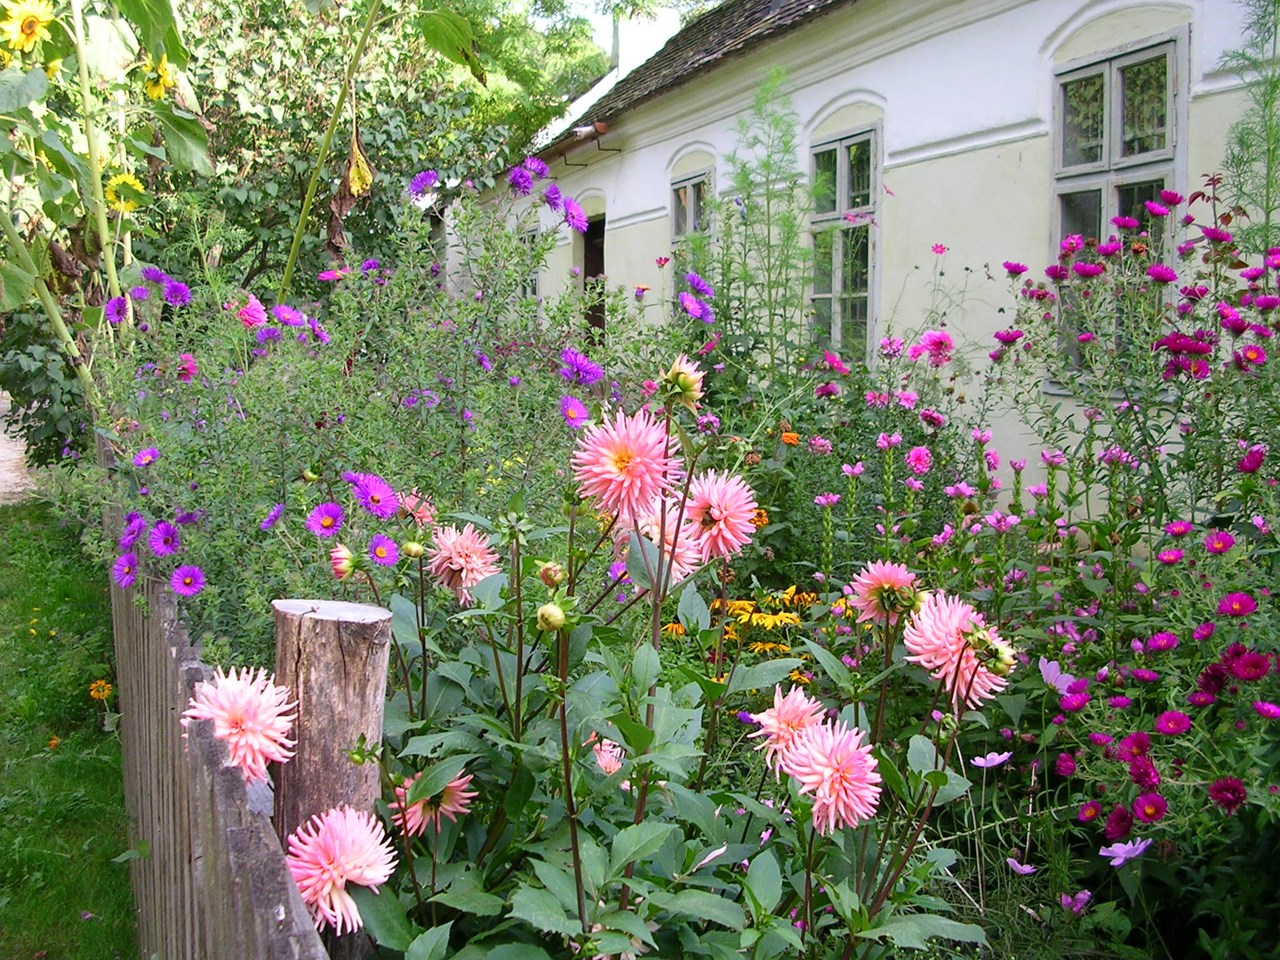 Museumsdorf Niedersulz Highlights beim Ausflugsziel Blühende Gärten, Blumenwiesen & Obstbäume